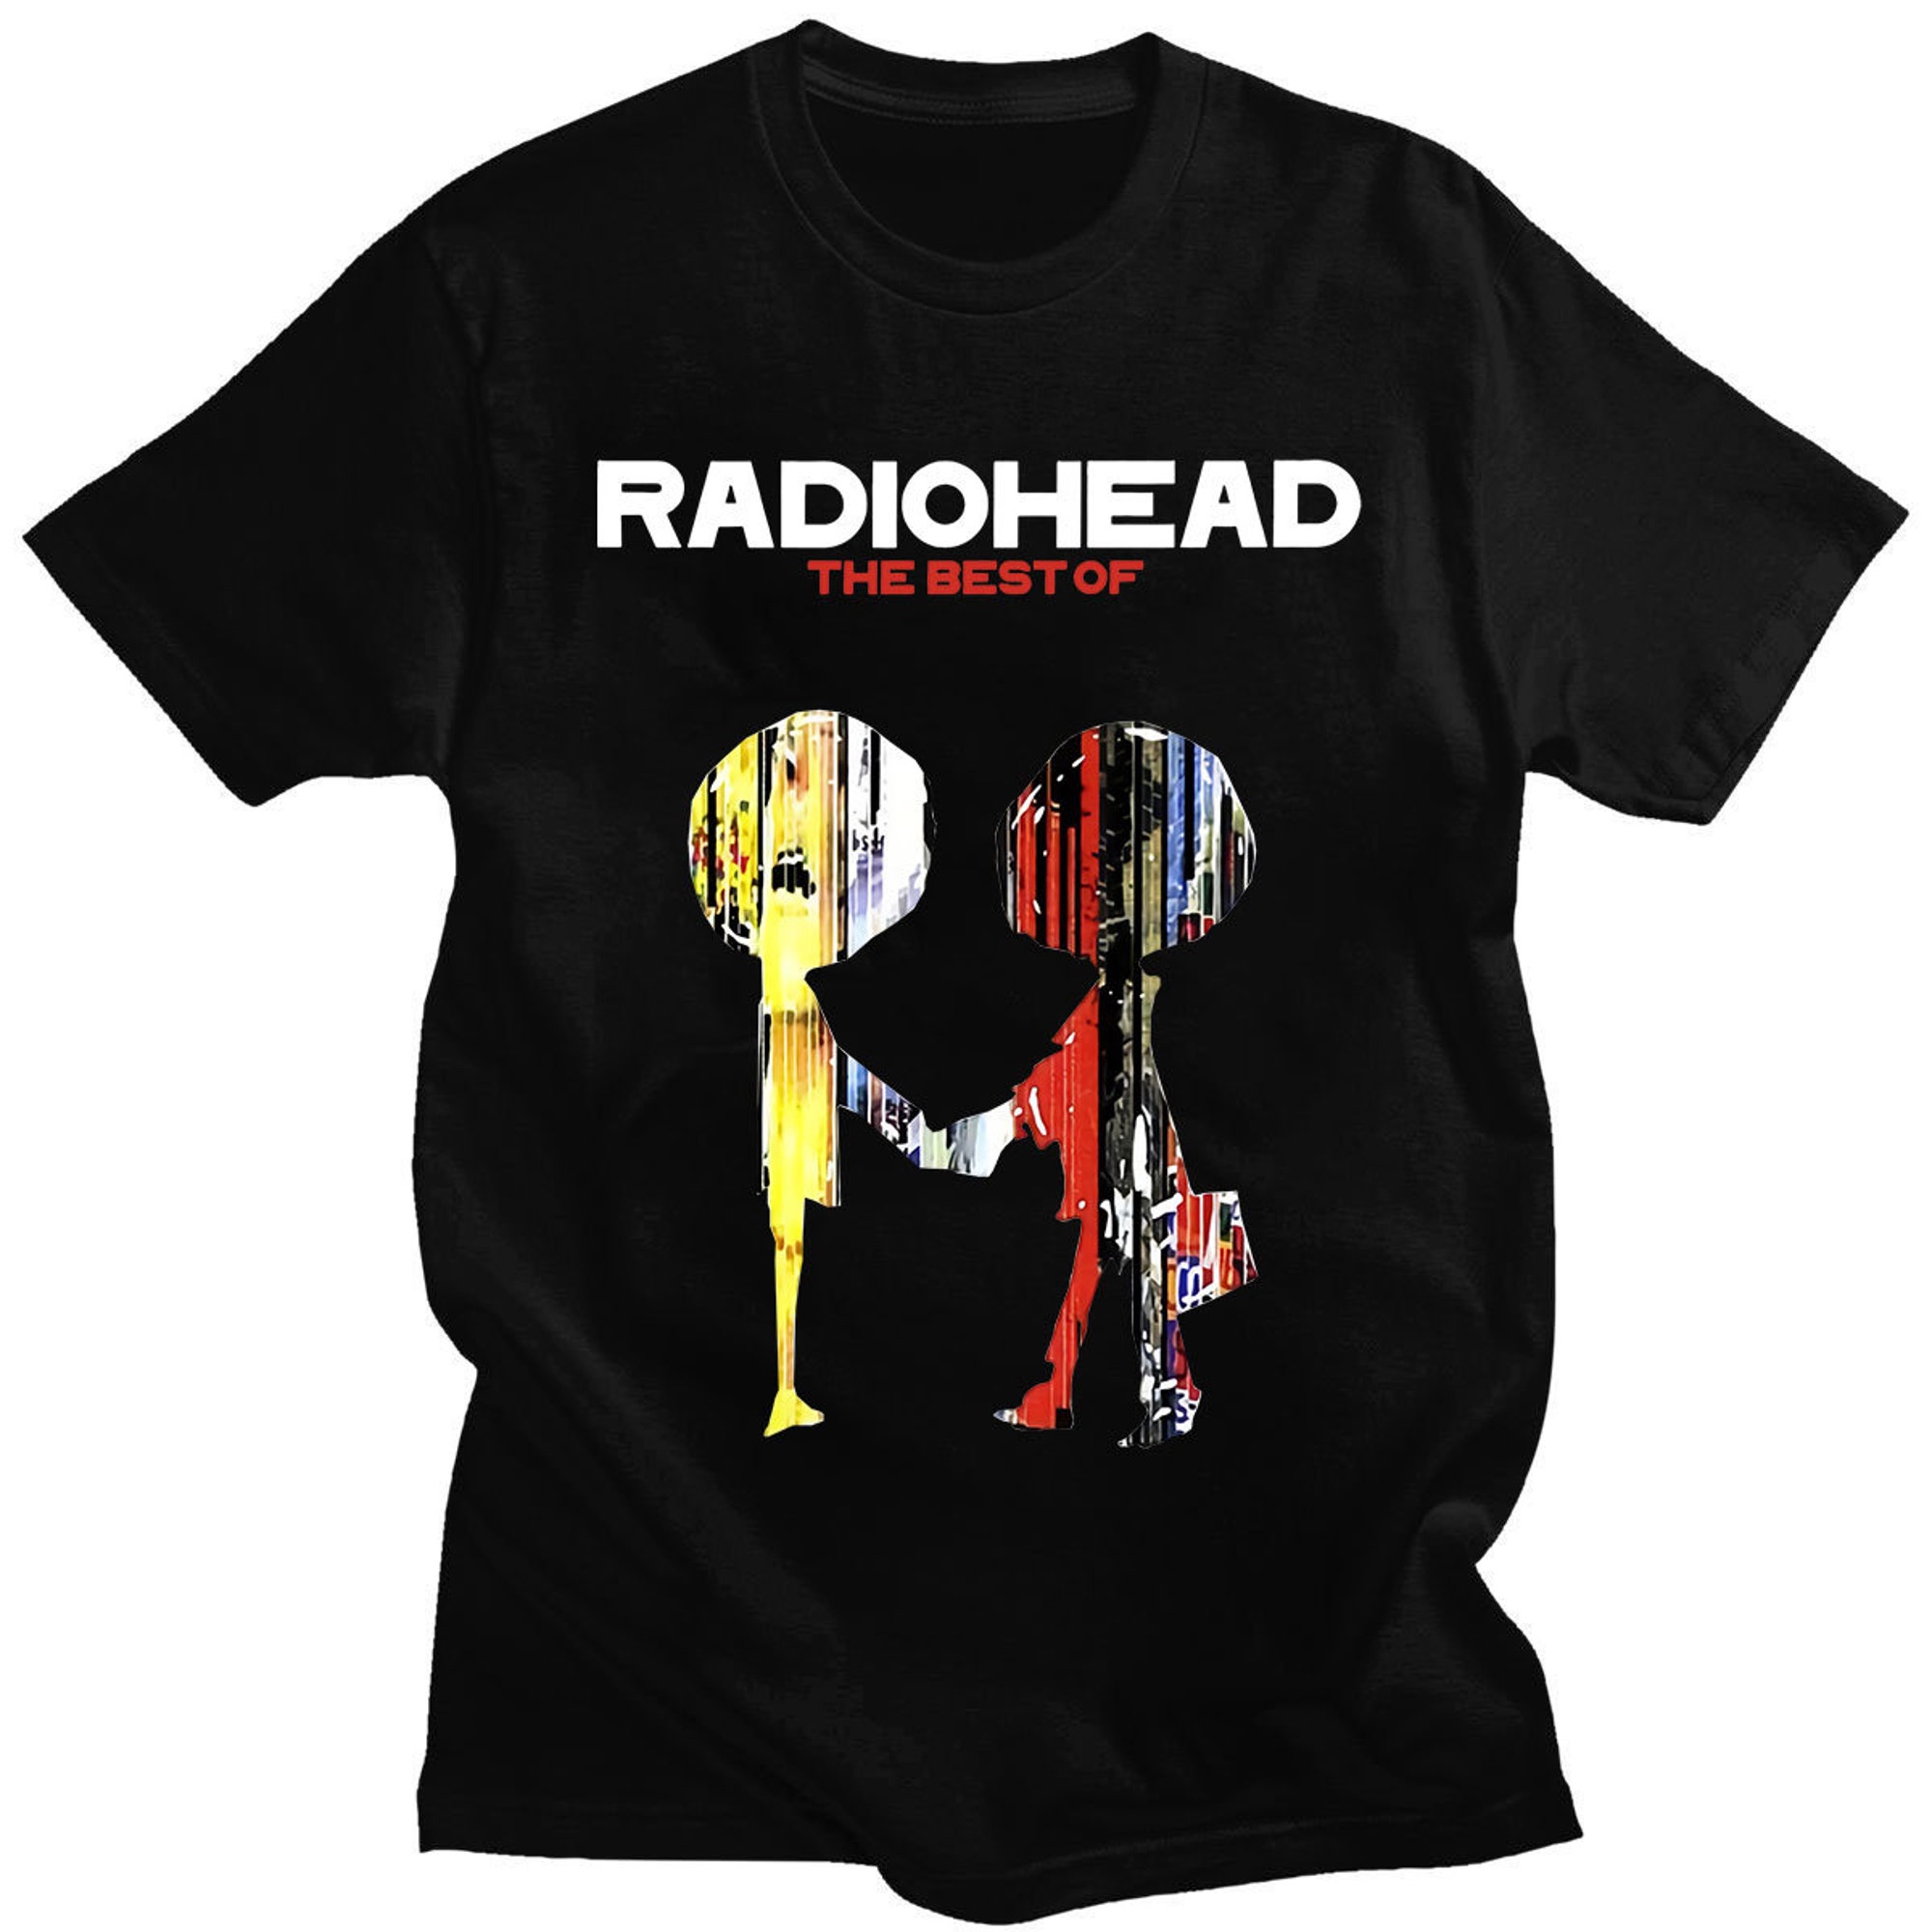 Vintage Radiohead shirt, Radiohead Vintage Retro concert t-shirt